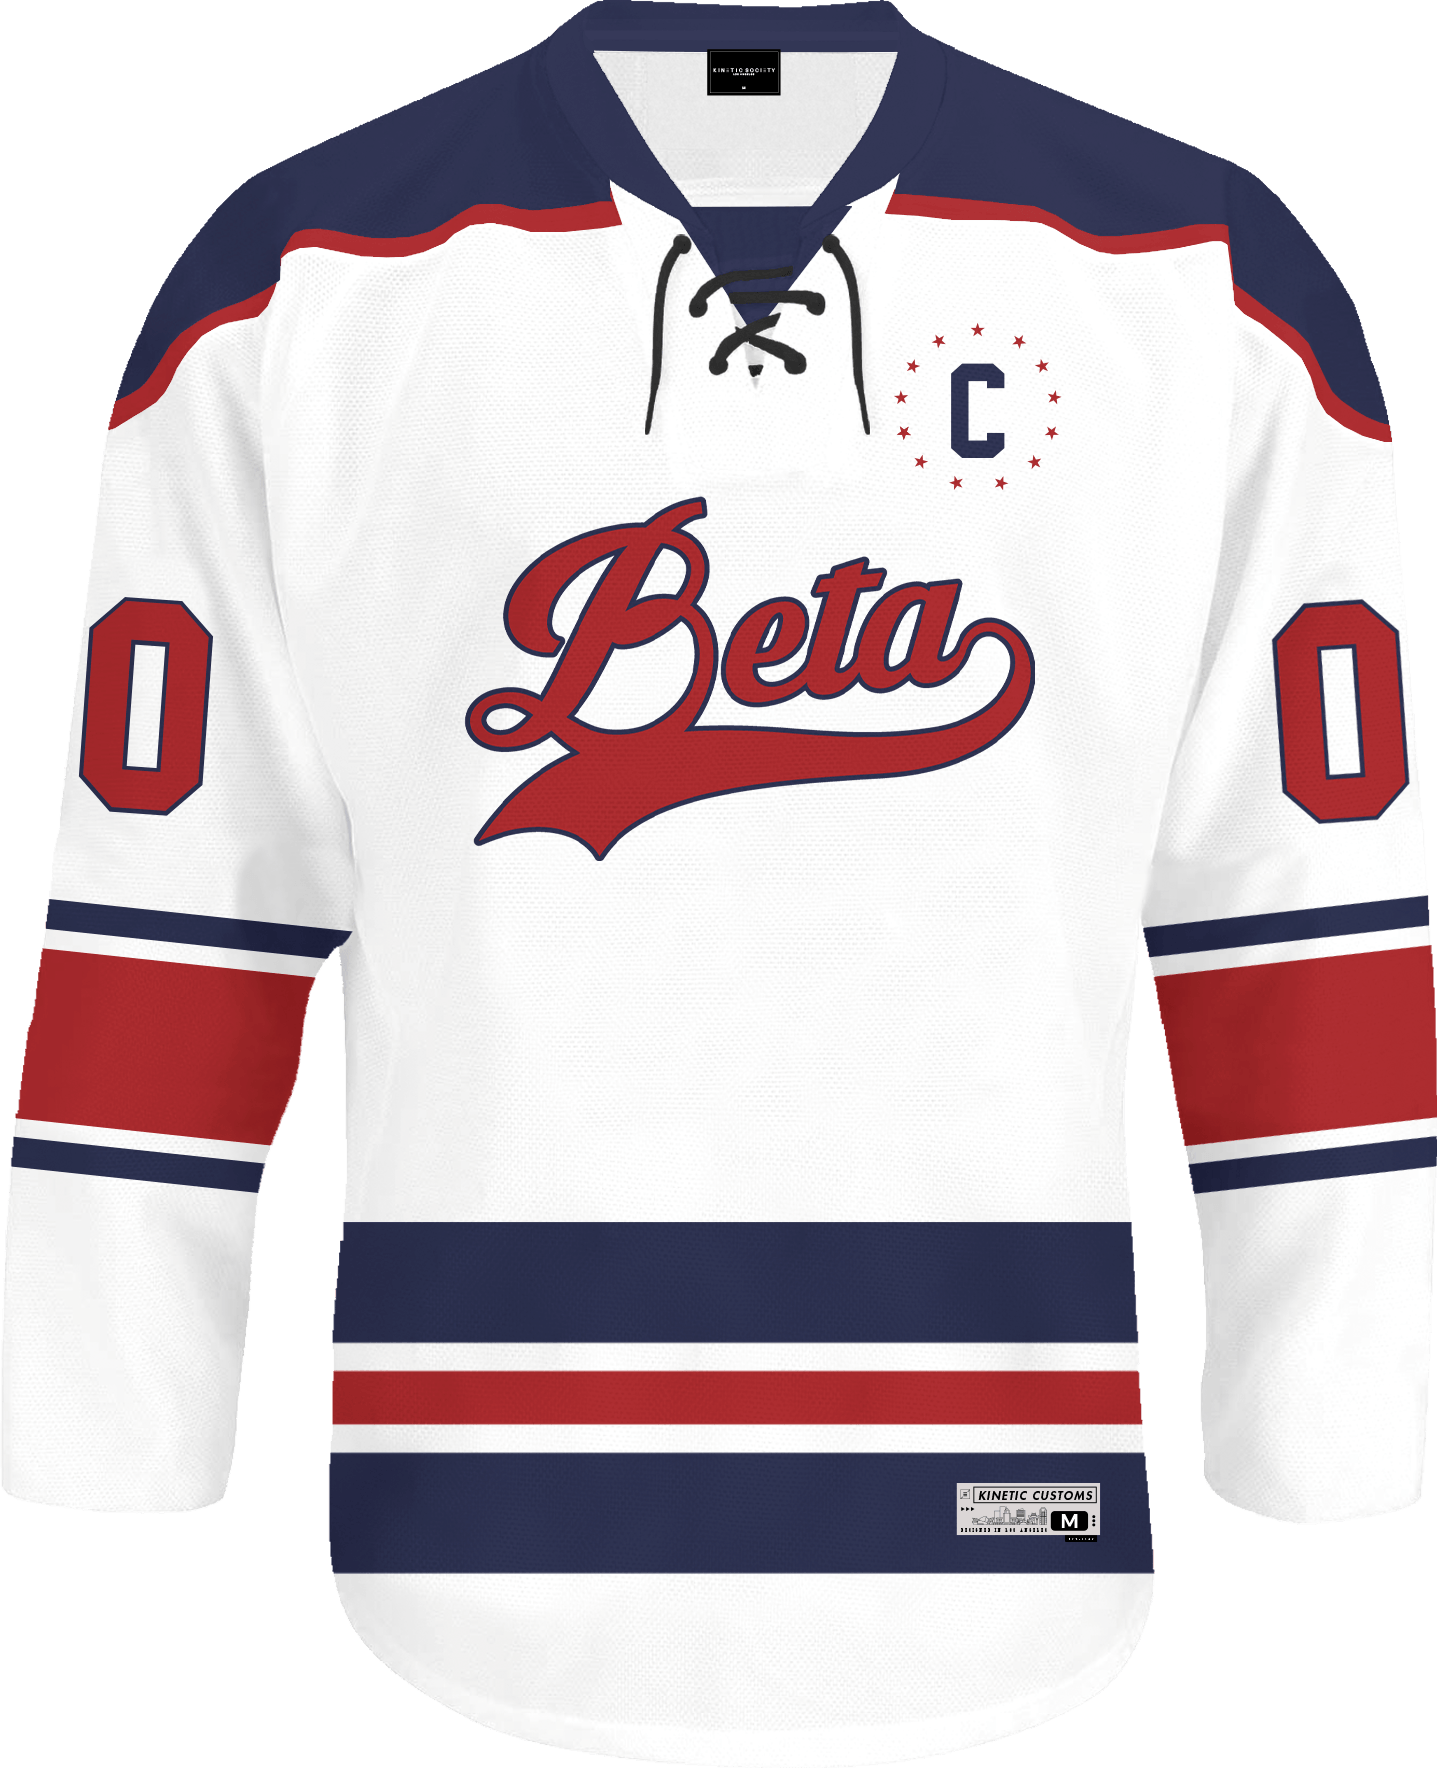 Beta Theta Pi - Captain Hockey Jersey - Kinetic Society